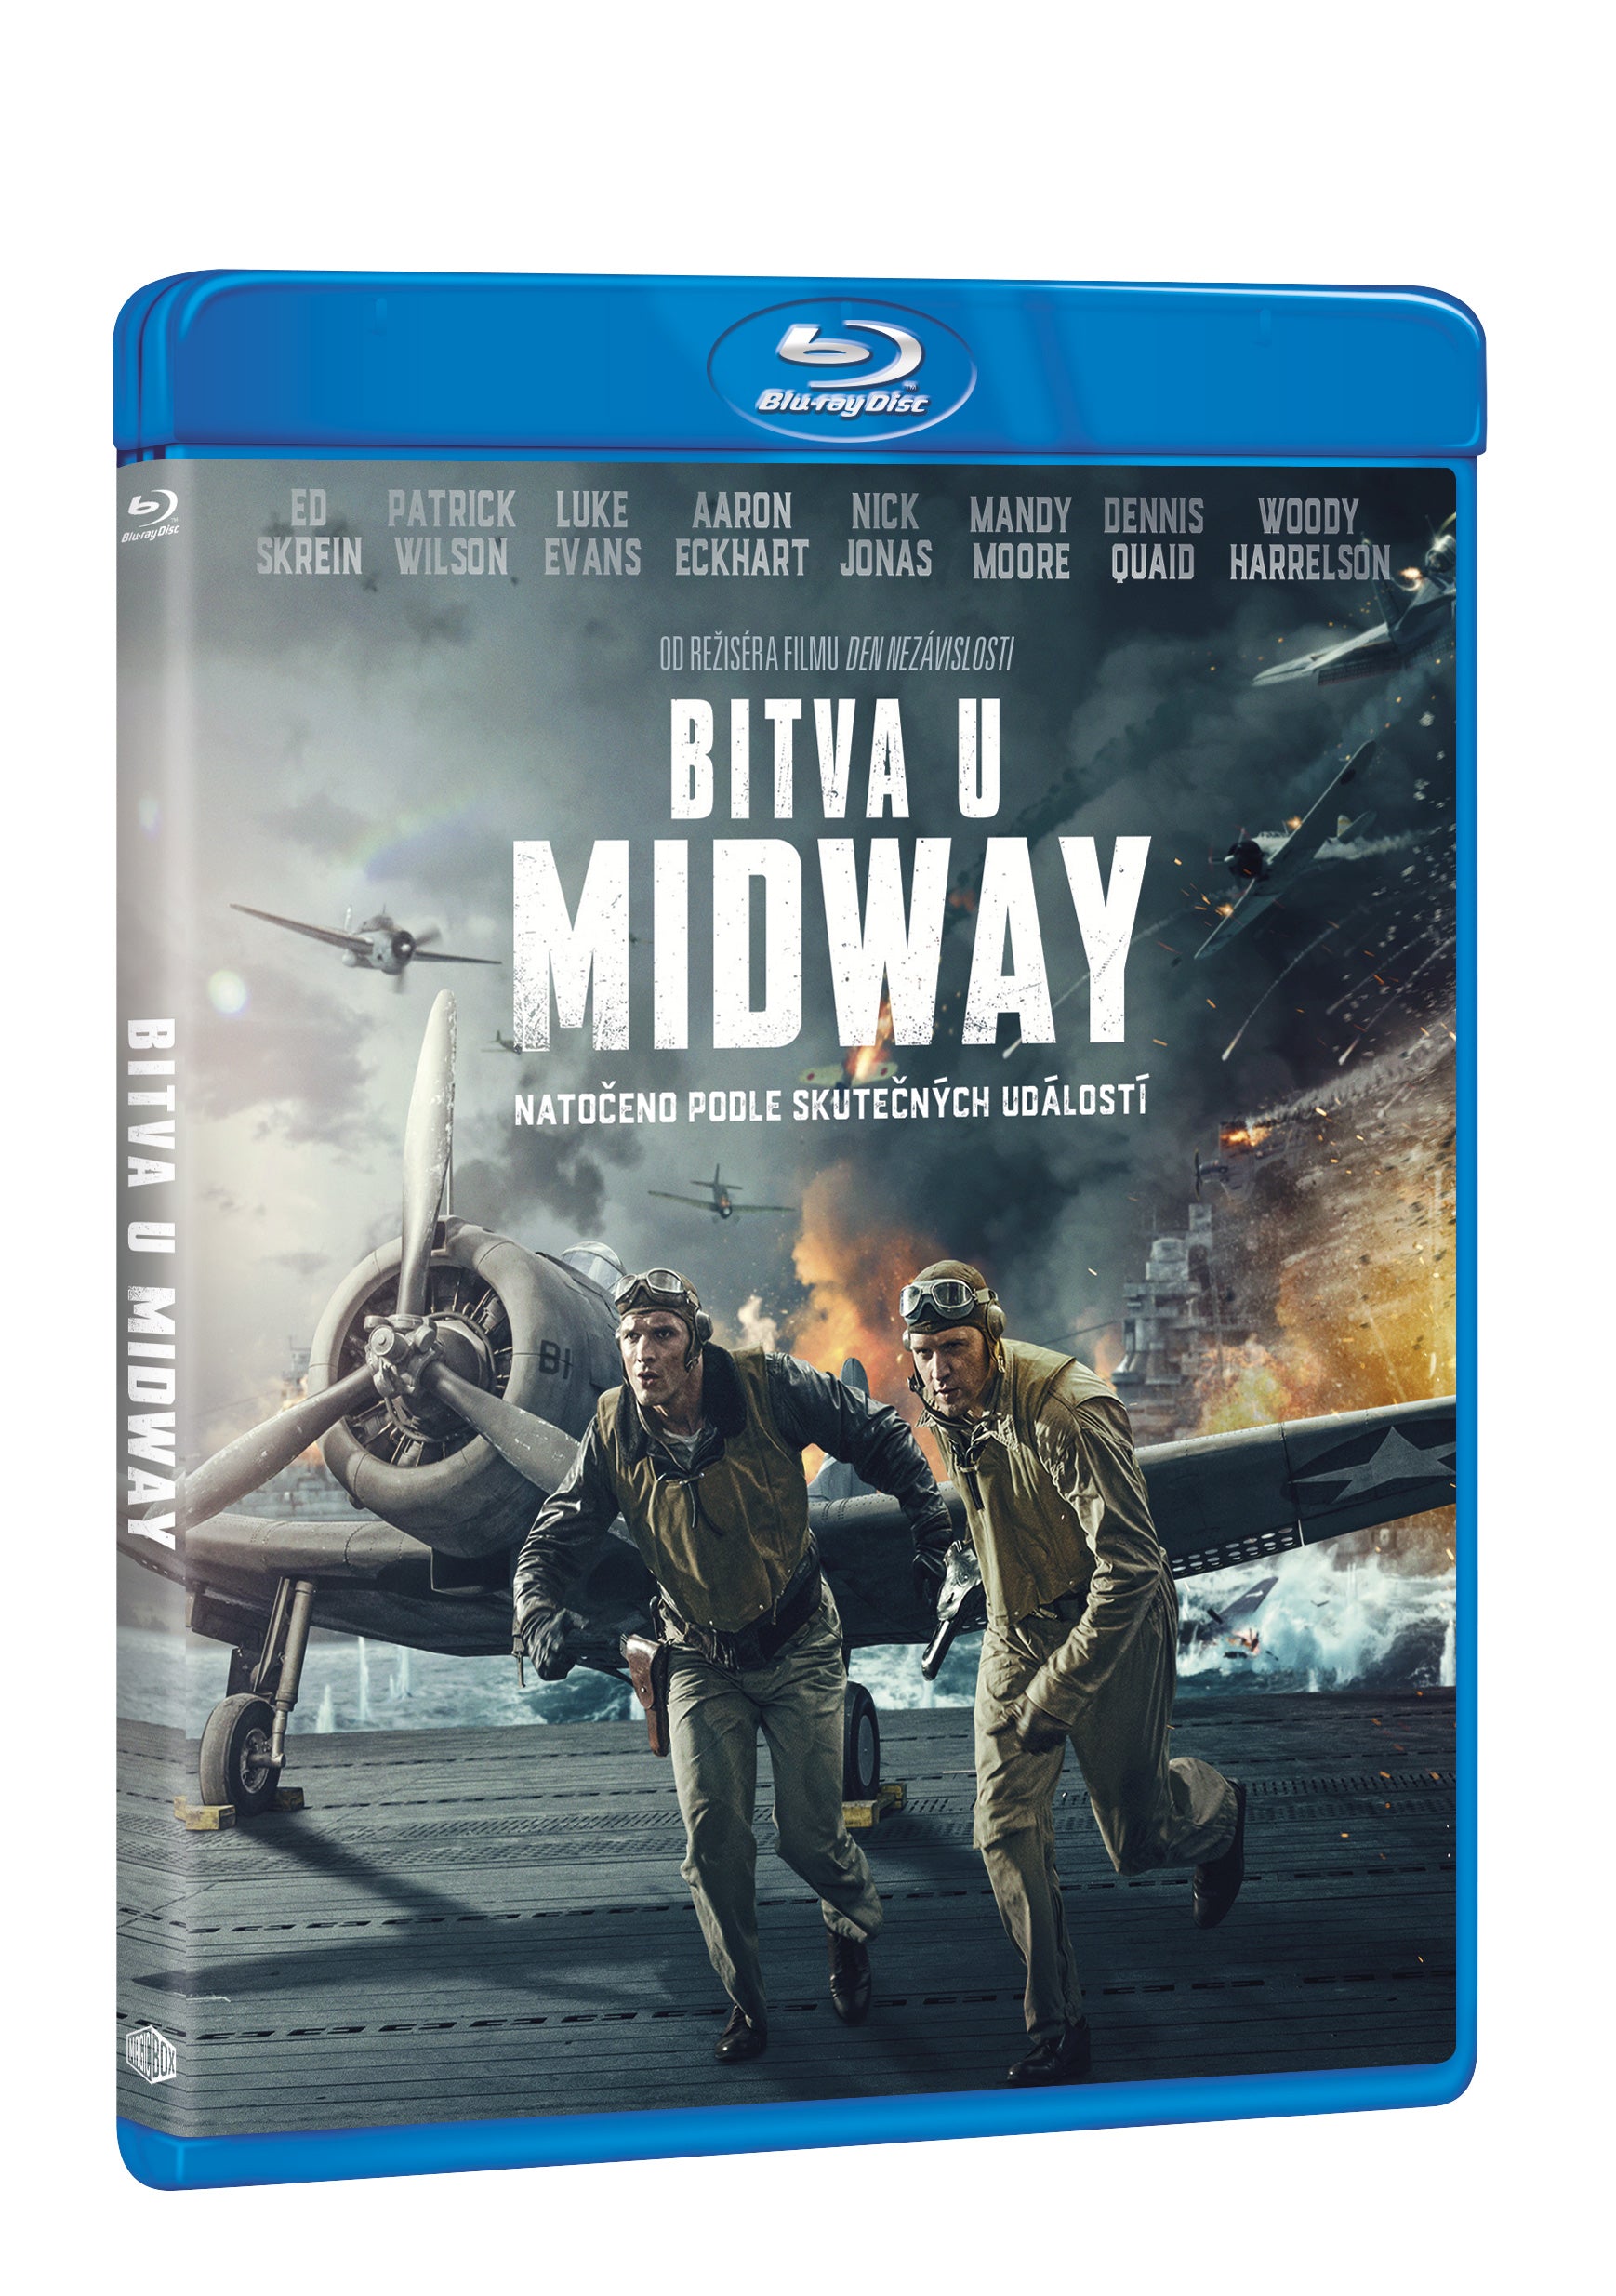 Bitva u Midway BD / Midway - Czech version